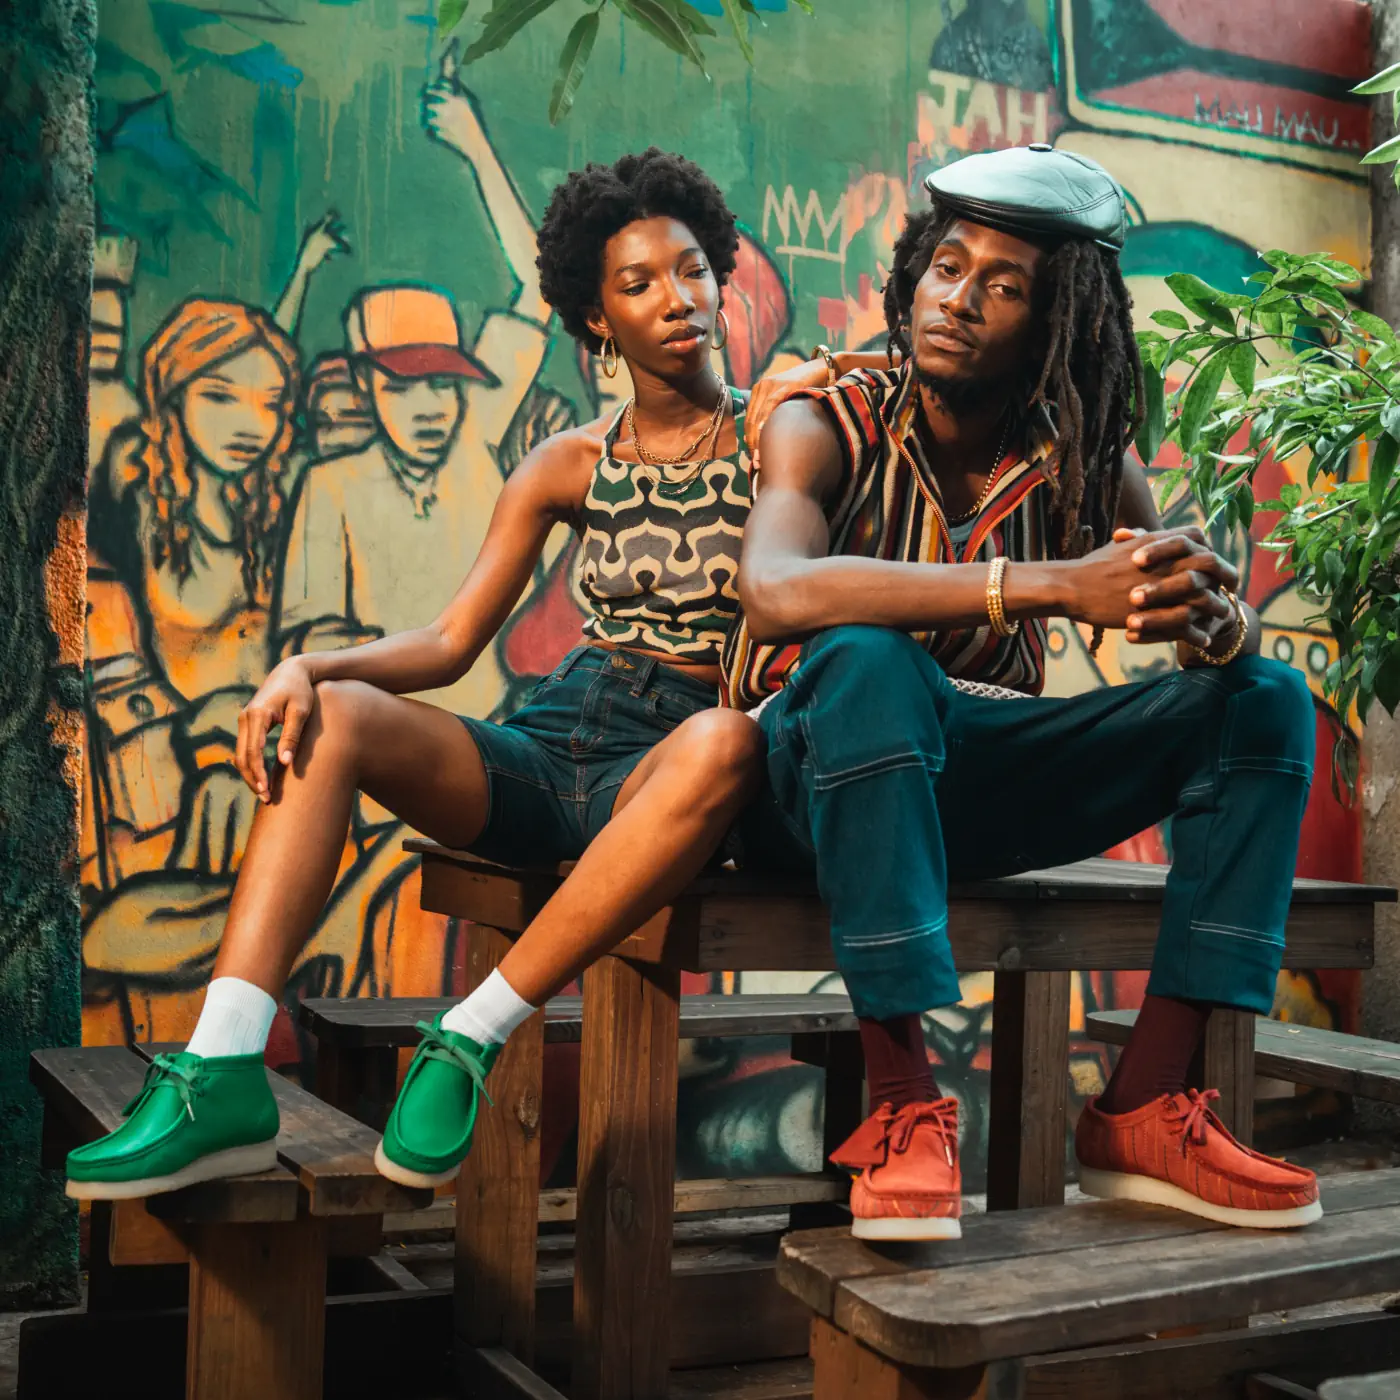 Danser au rythme de la Jamaïque avec la collection Dancehall de Clarks